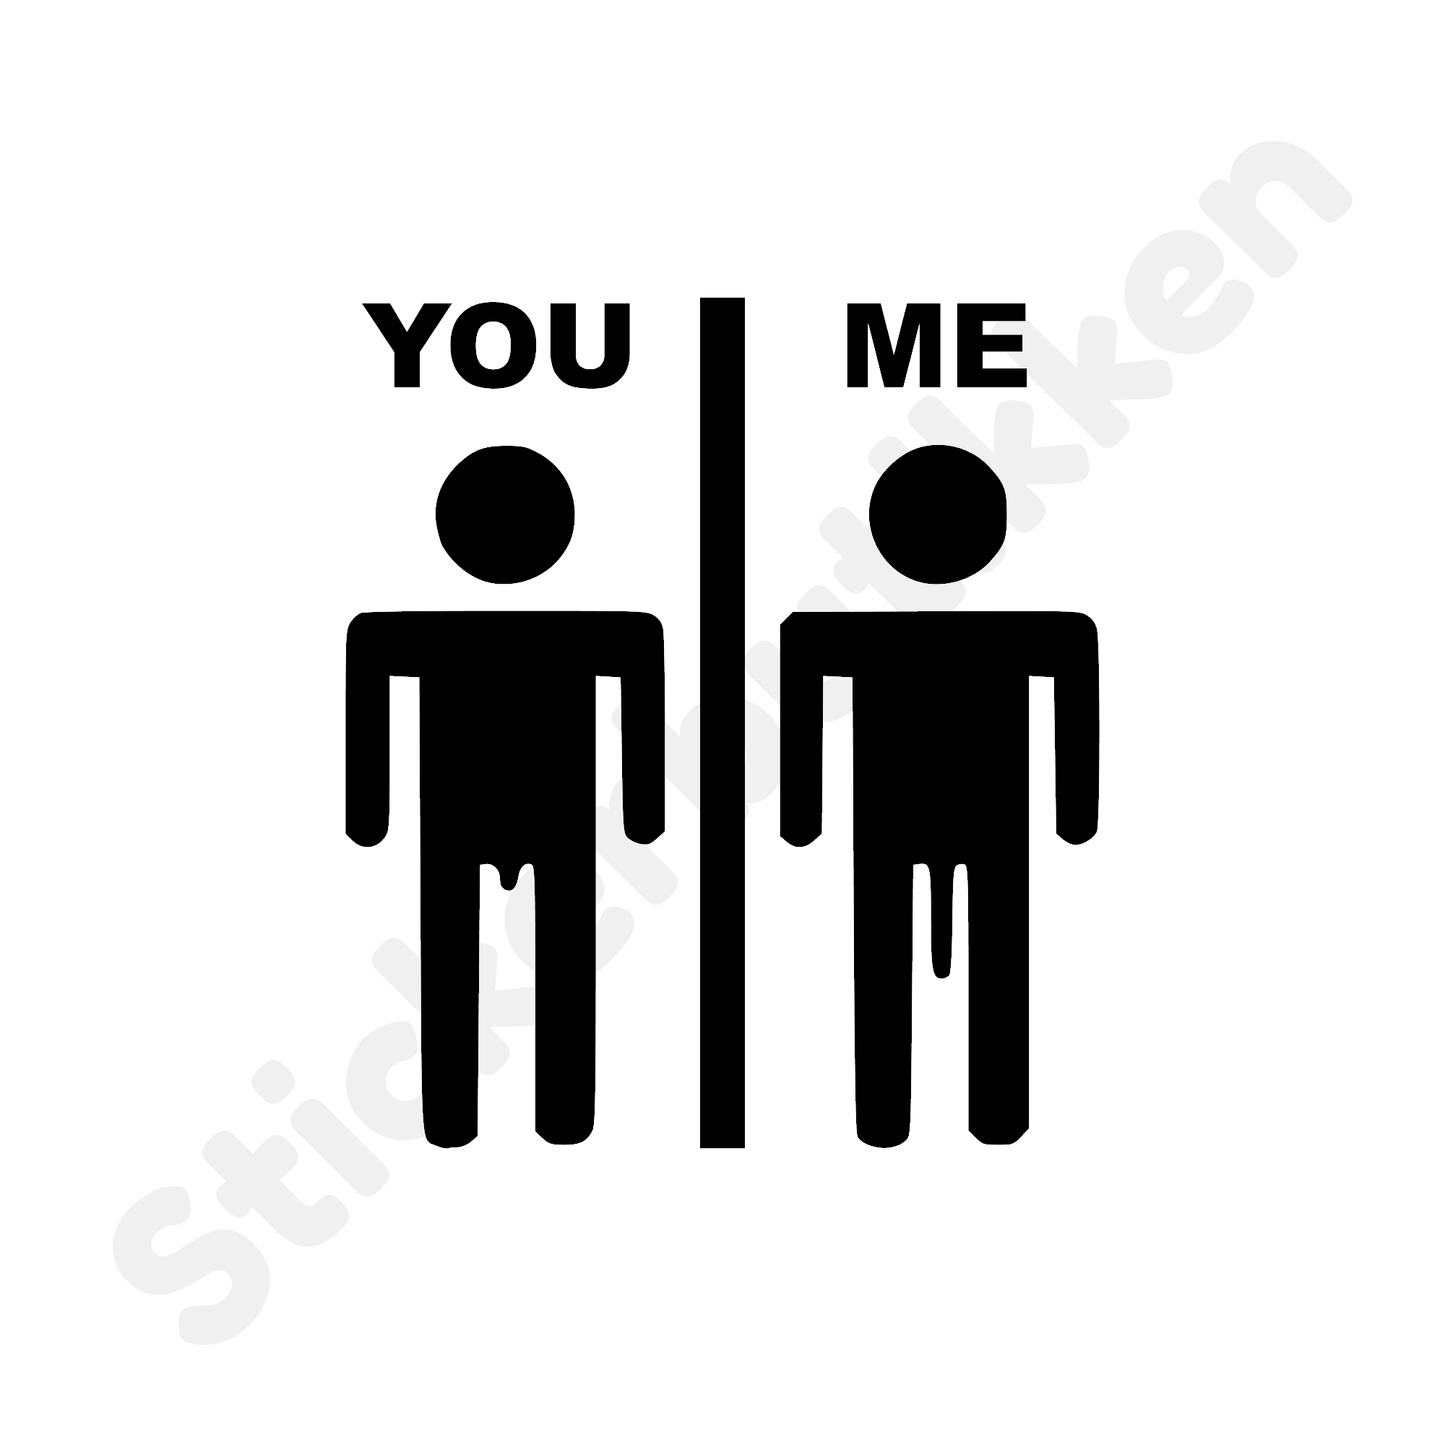 YOU vs ME